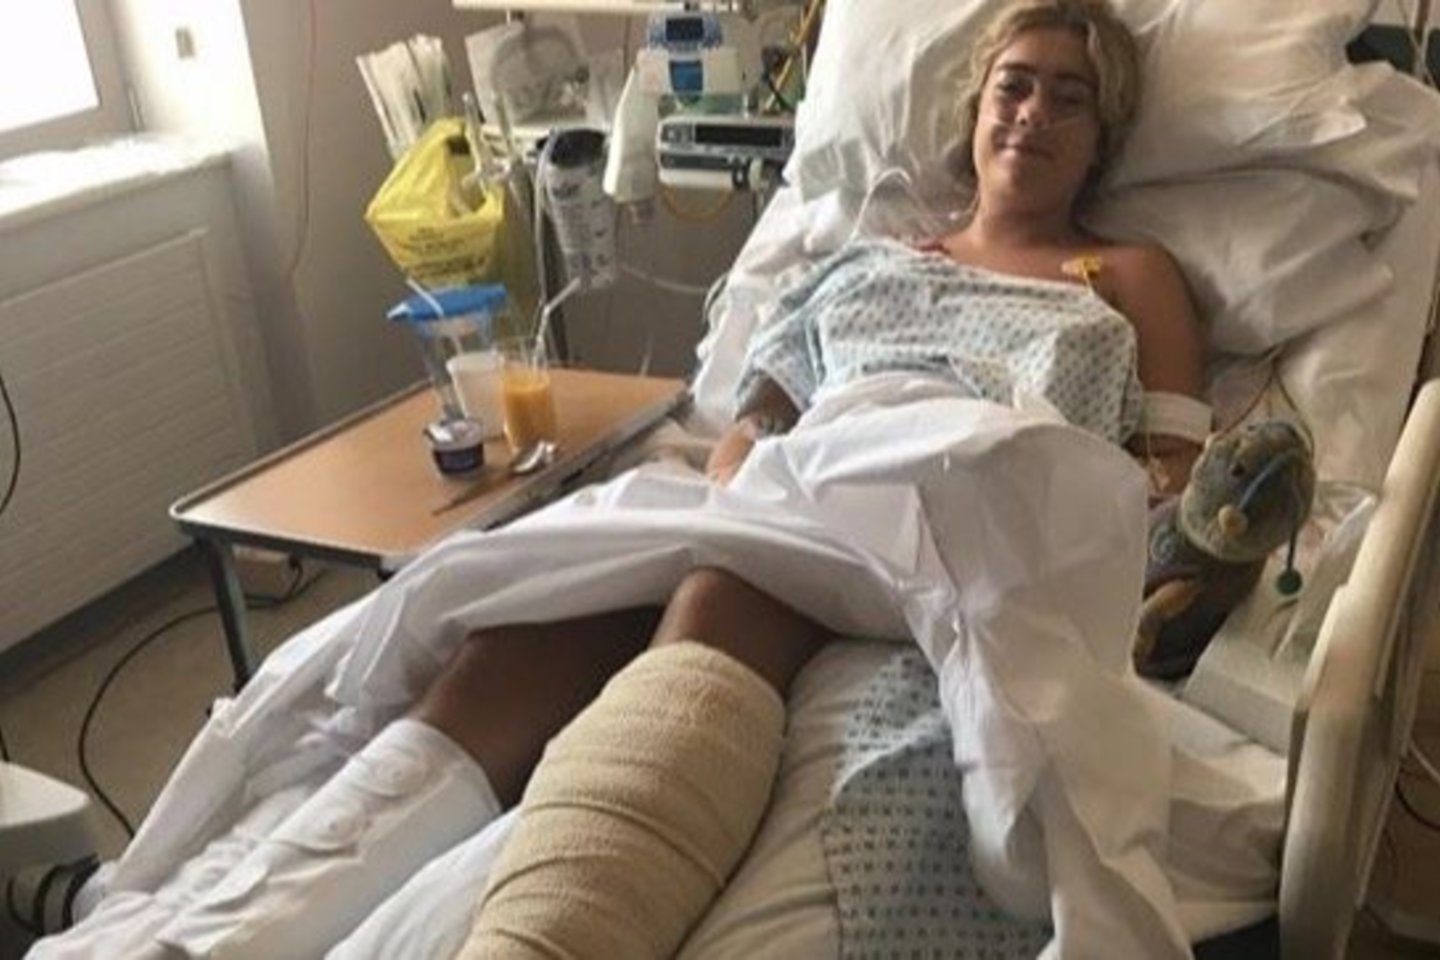  Tai, kad merginos koja buvo išgelbėta ir ji išgyveno, gydytojai vadina stebuklu.<br> Instagramo nuotr.